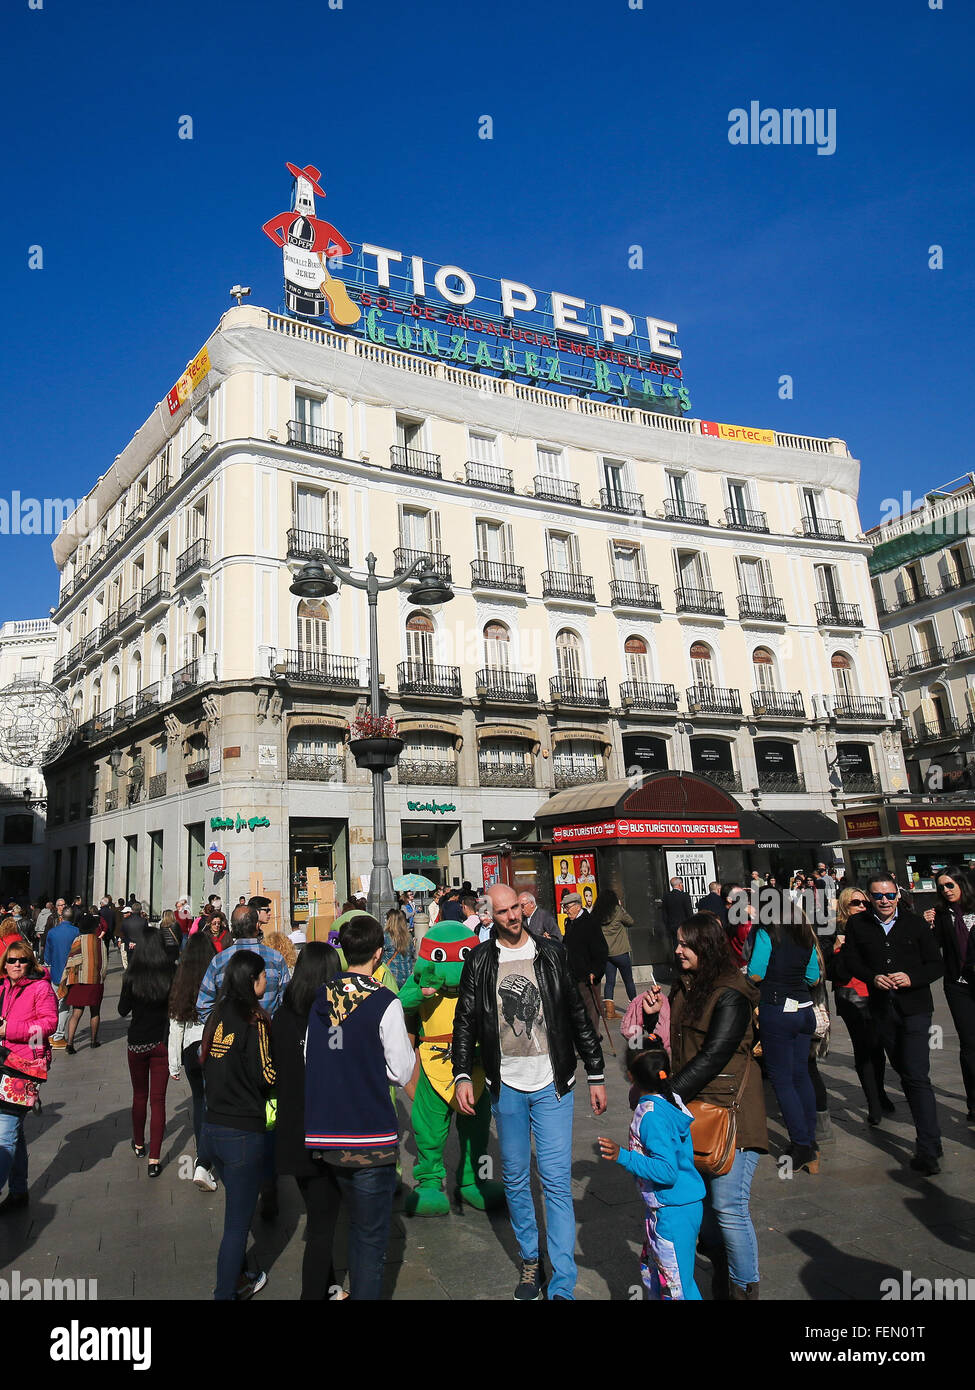 MADRID, Spagna - 14 novembre 2015: il famoso Tio Pepe pubblicità alla Puerta del Sol, uno dei più noti e frequentati luoghi Foto Stock